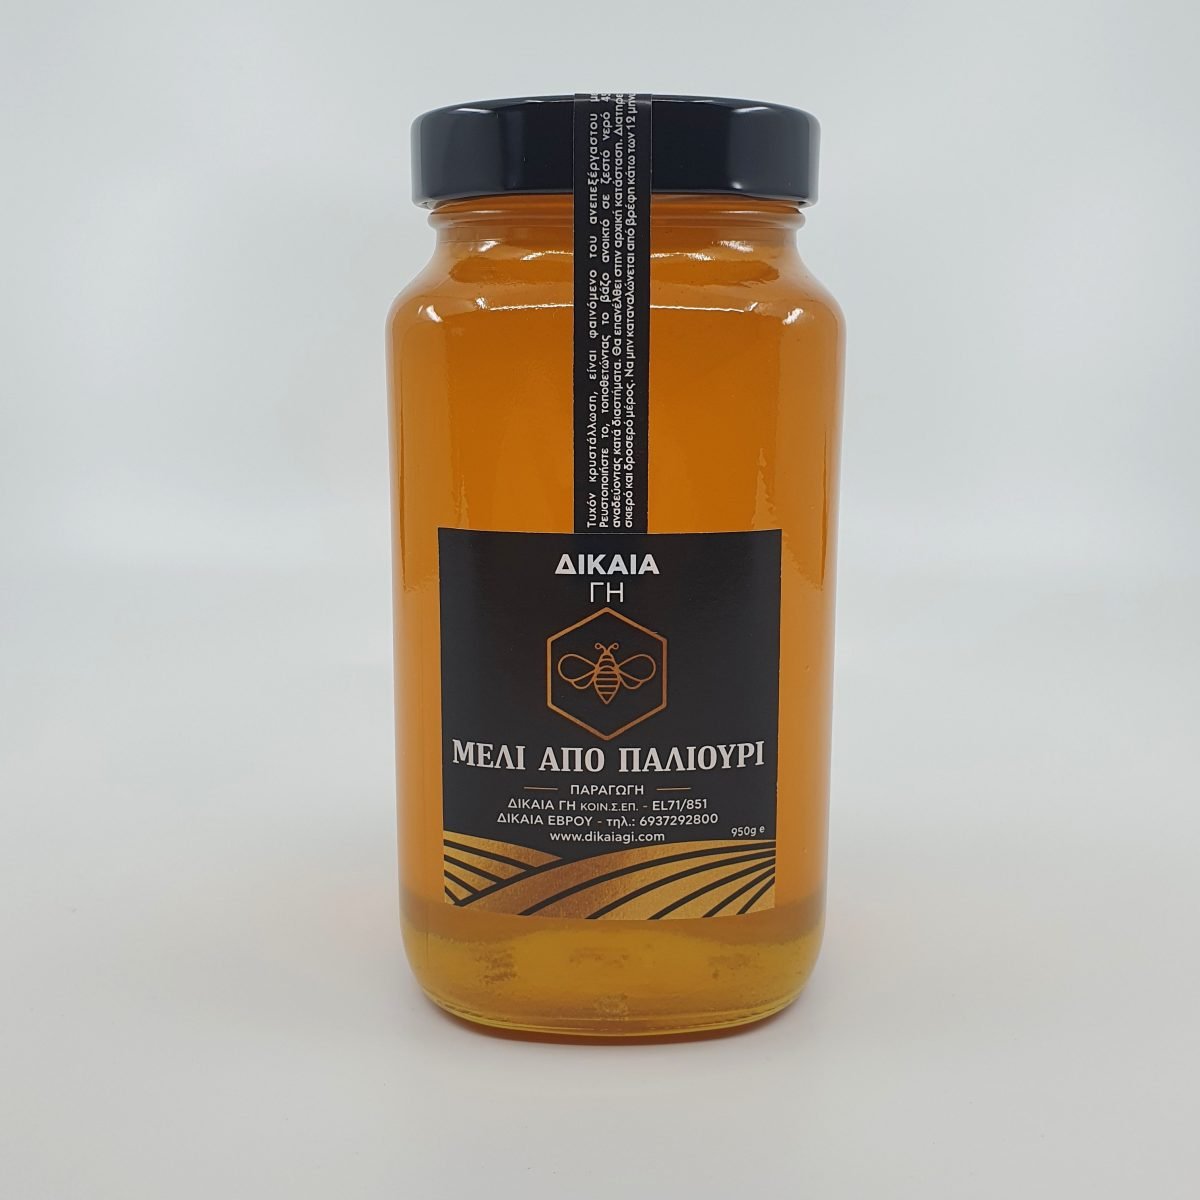 Μέλι από Παλιούρι 950γρ- "Δίκαια Γη"